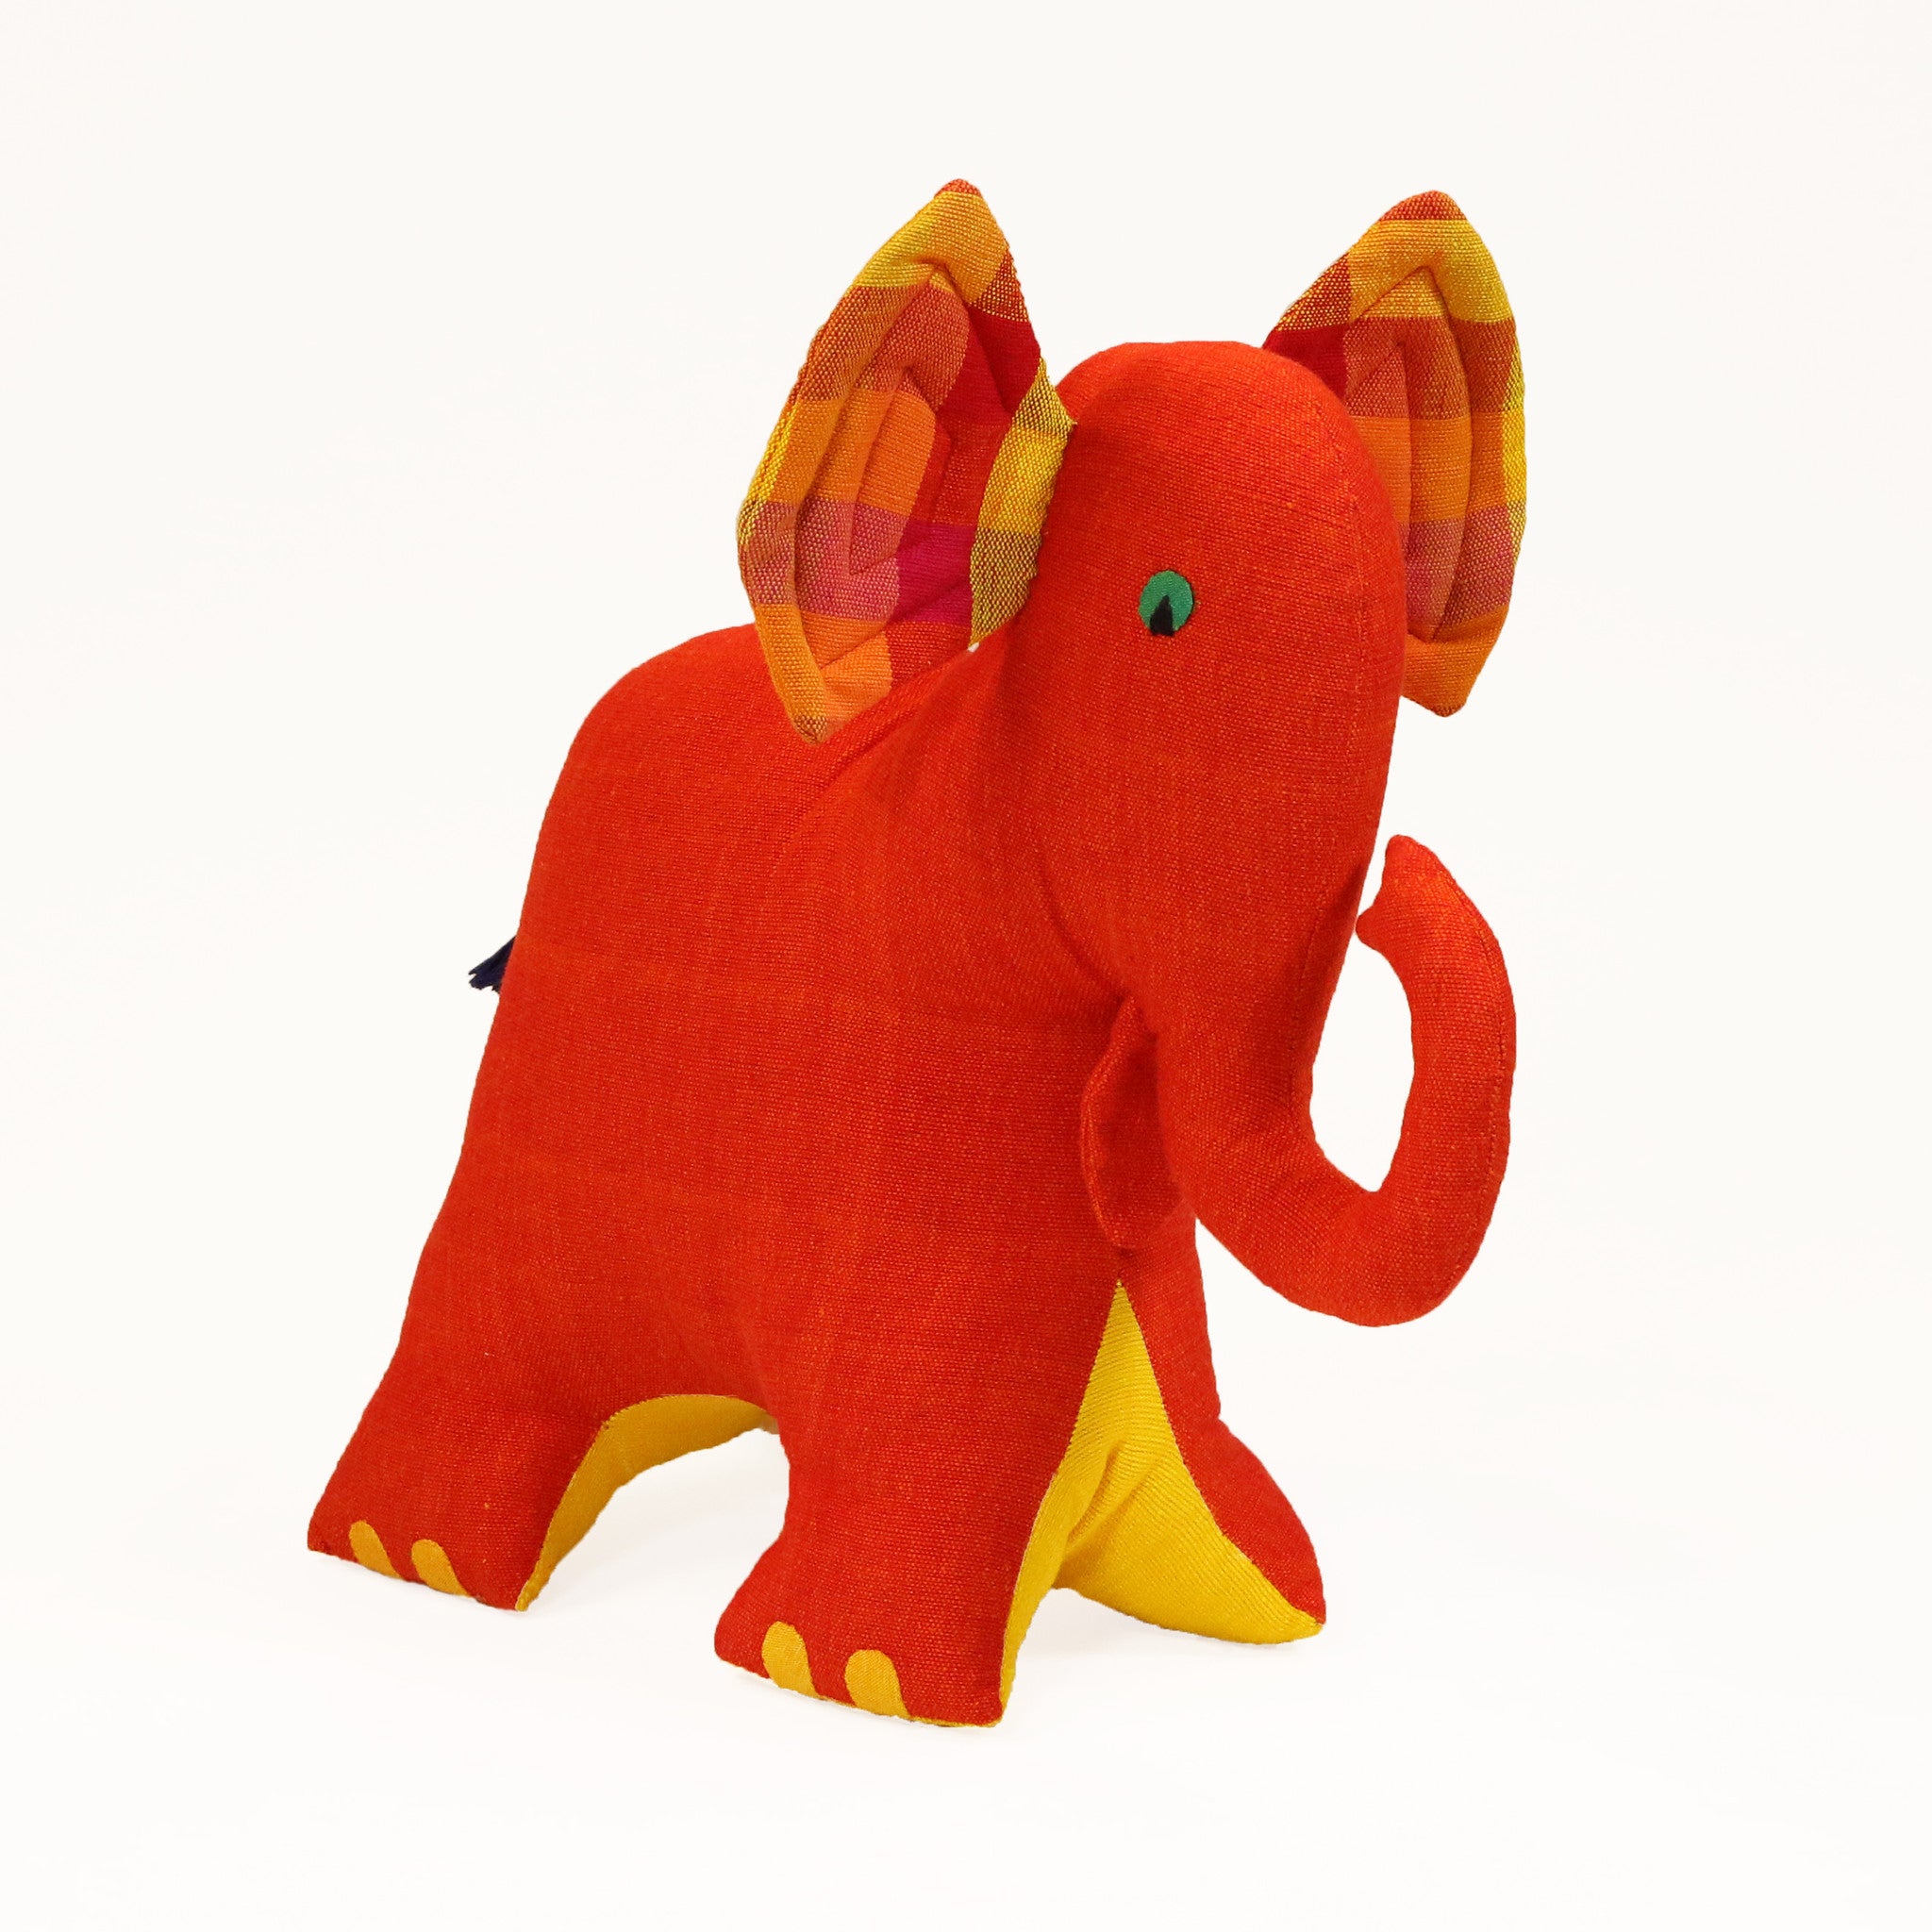 Eva, the Elephant (large size)